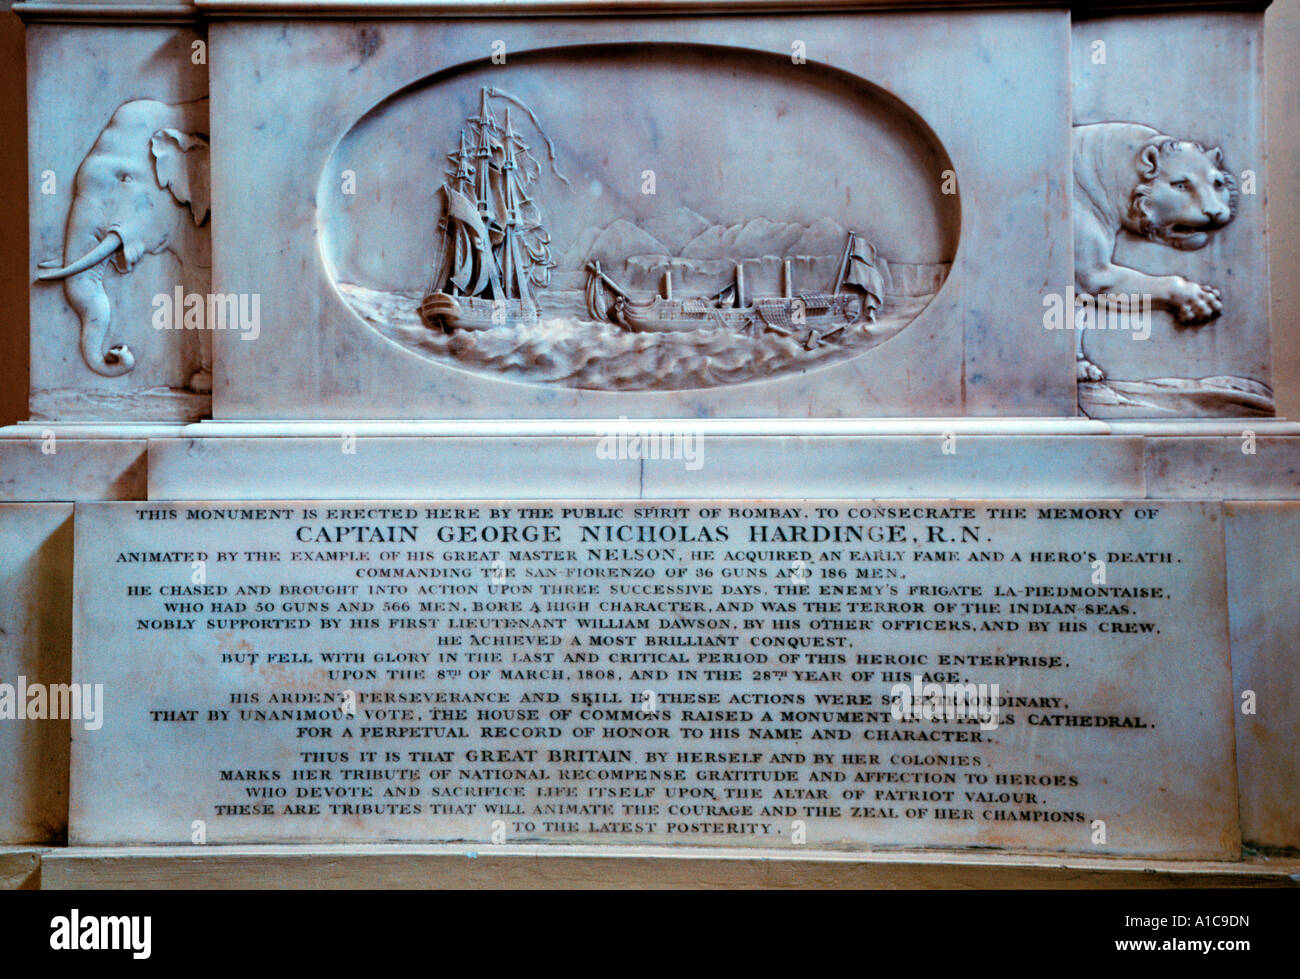 En pierre dans la Cathédrale de Saint Thomas Mumbai sélectionné pour la conservation du patrimoine de la région Asie-Pacifique de l'UNESCO Award 2004 de l'Inde. Banque D'Images